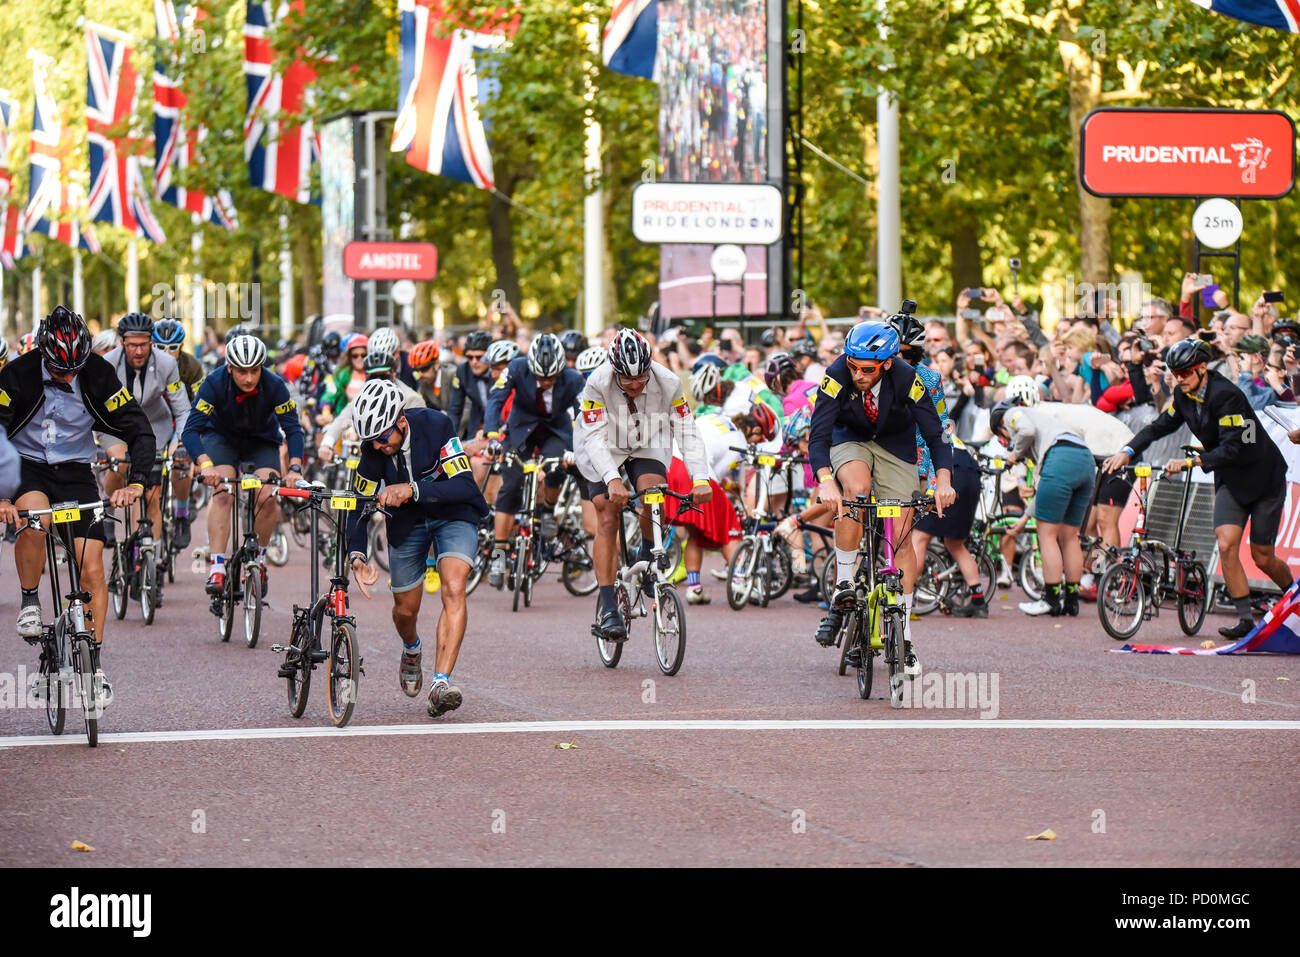 Championnat du Monde de vélo Brompton Prudential RideLondon final au cours de l'événement du cycle dans le Mall, Londres, Royaume-Uni. Brompton vélo pliant, vélo, course cycliste Banque D'Images